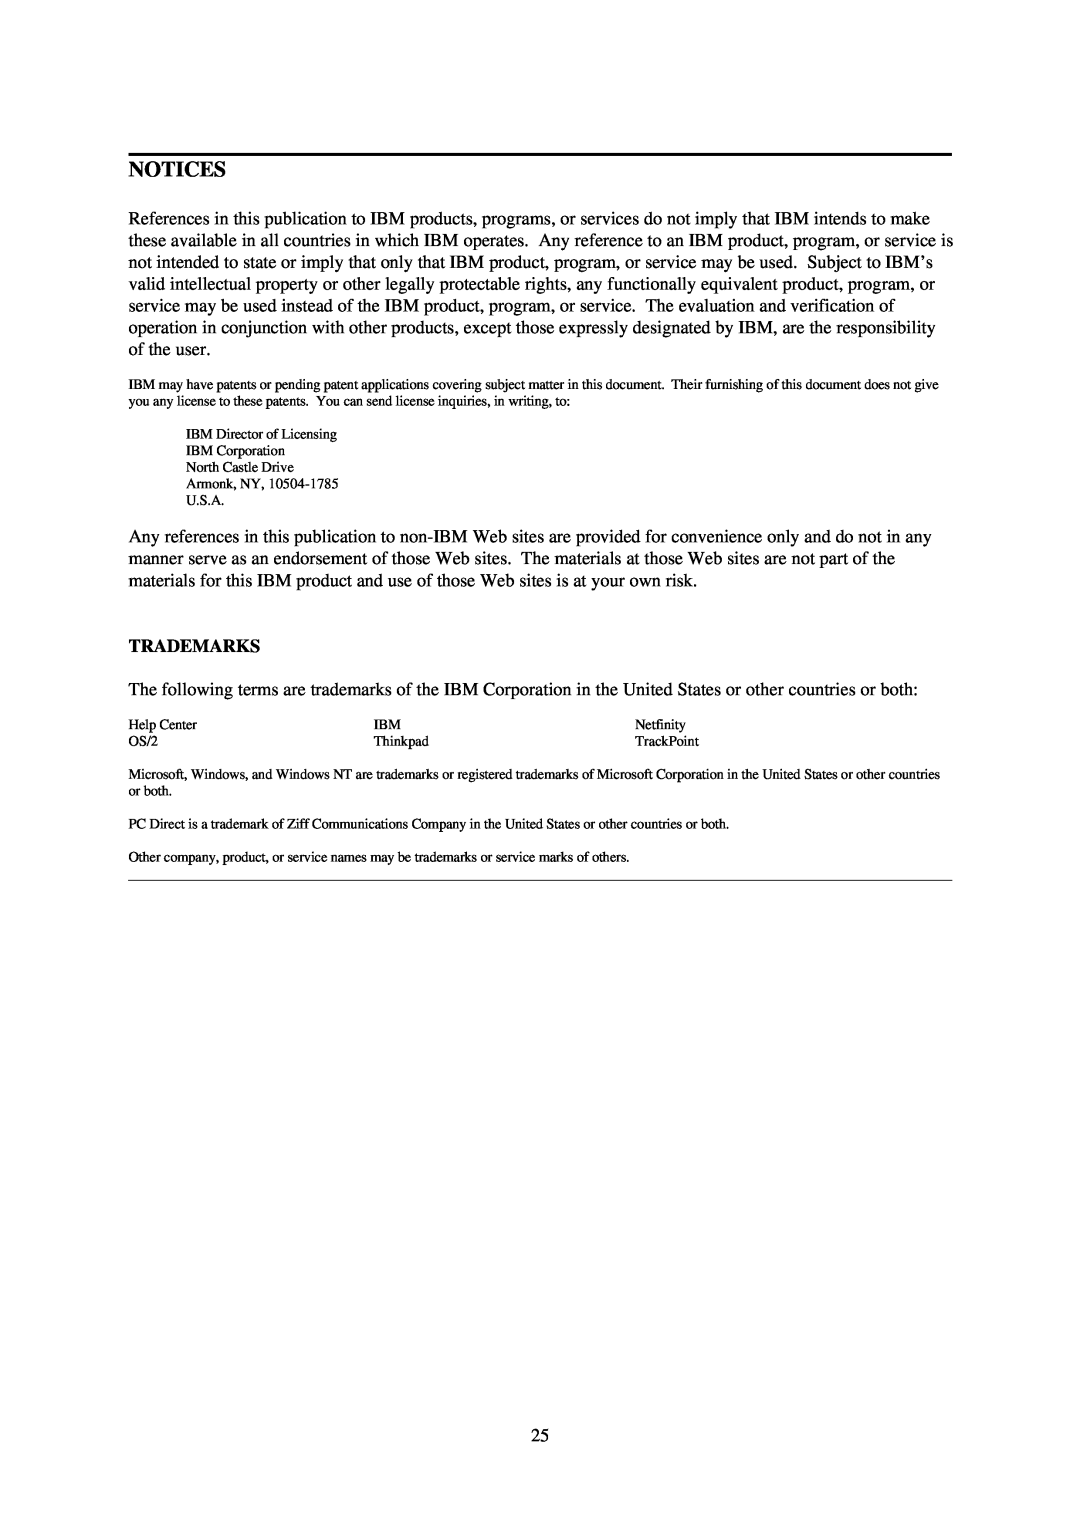 IBM L70 manual Notices, Trademarks 